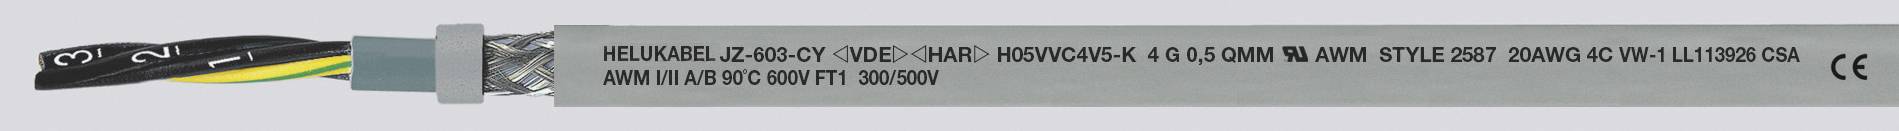 HELUKABEL JZ-603-CY Steuerleitung 4 G 0.50 mm² Grau 83721-500 500 m